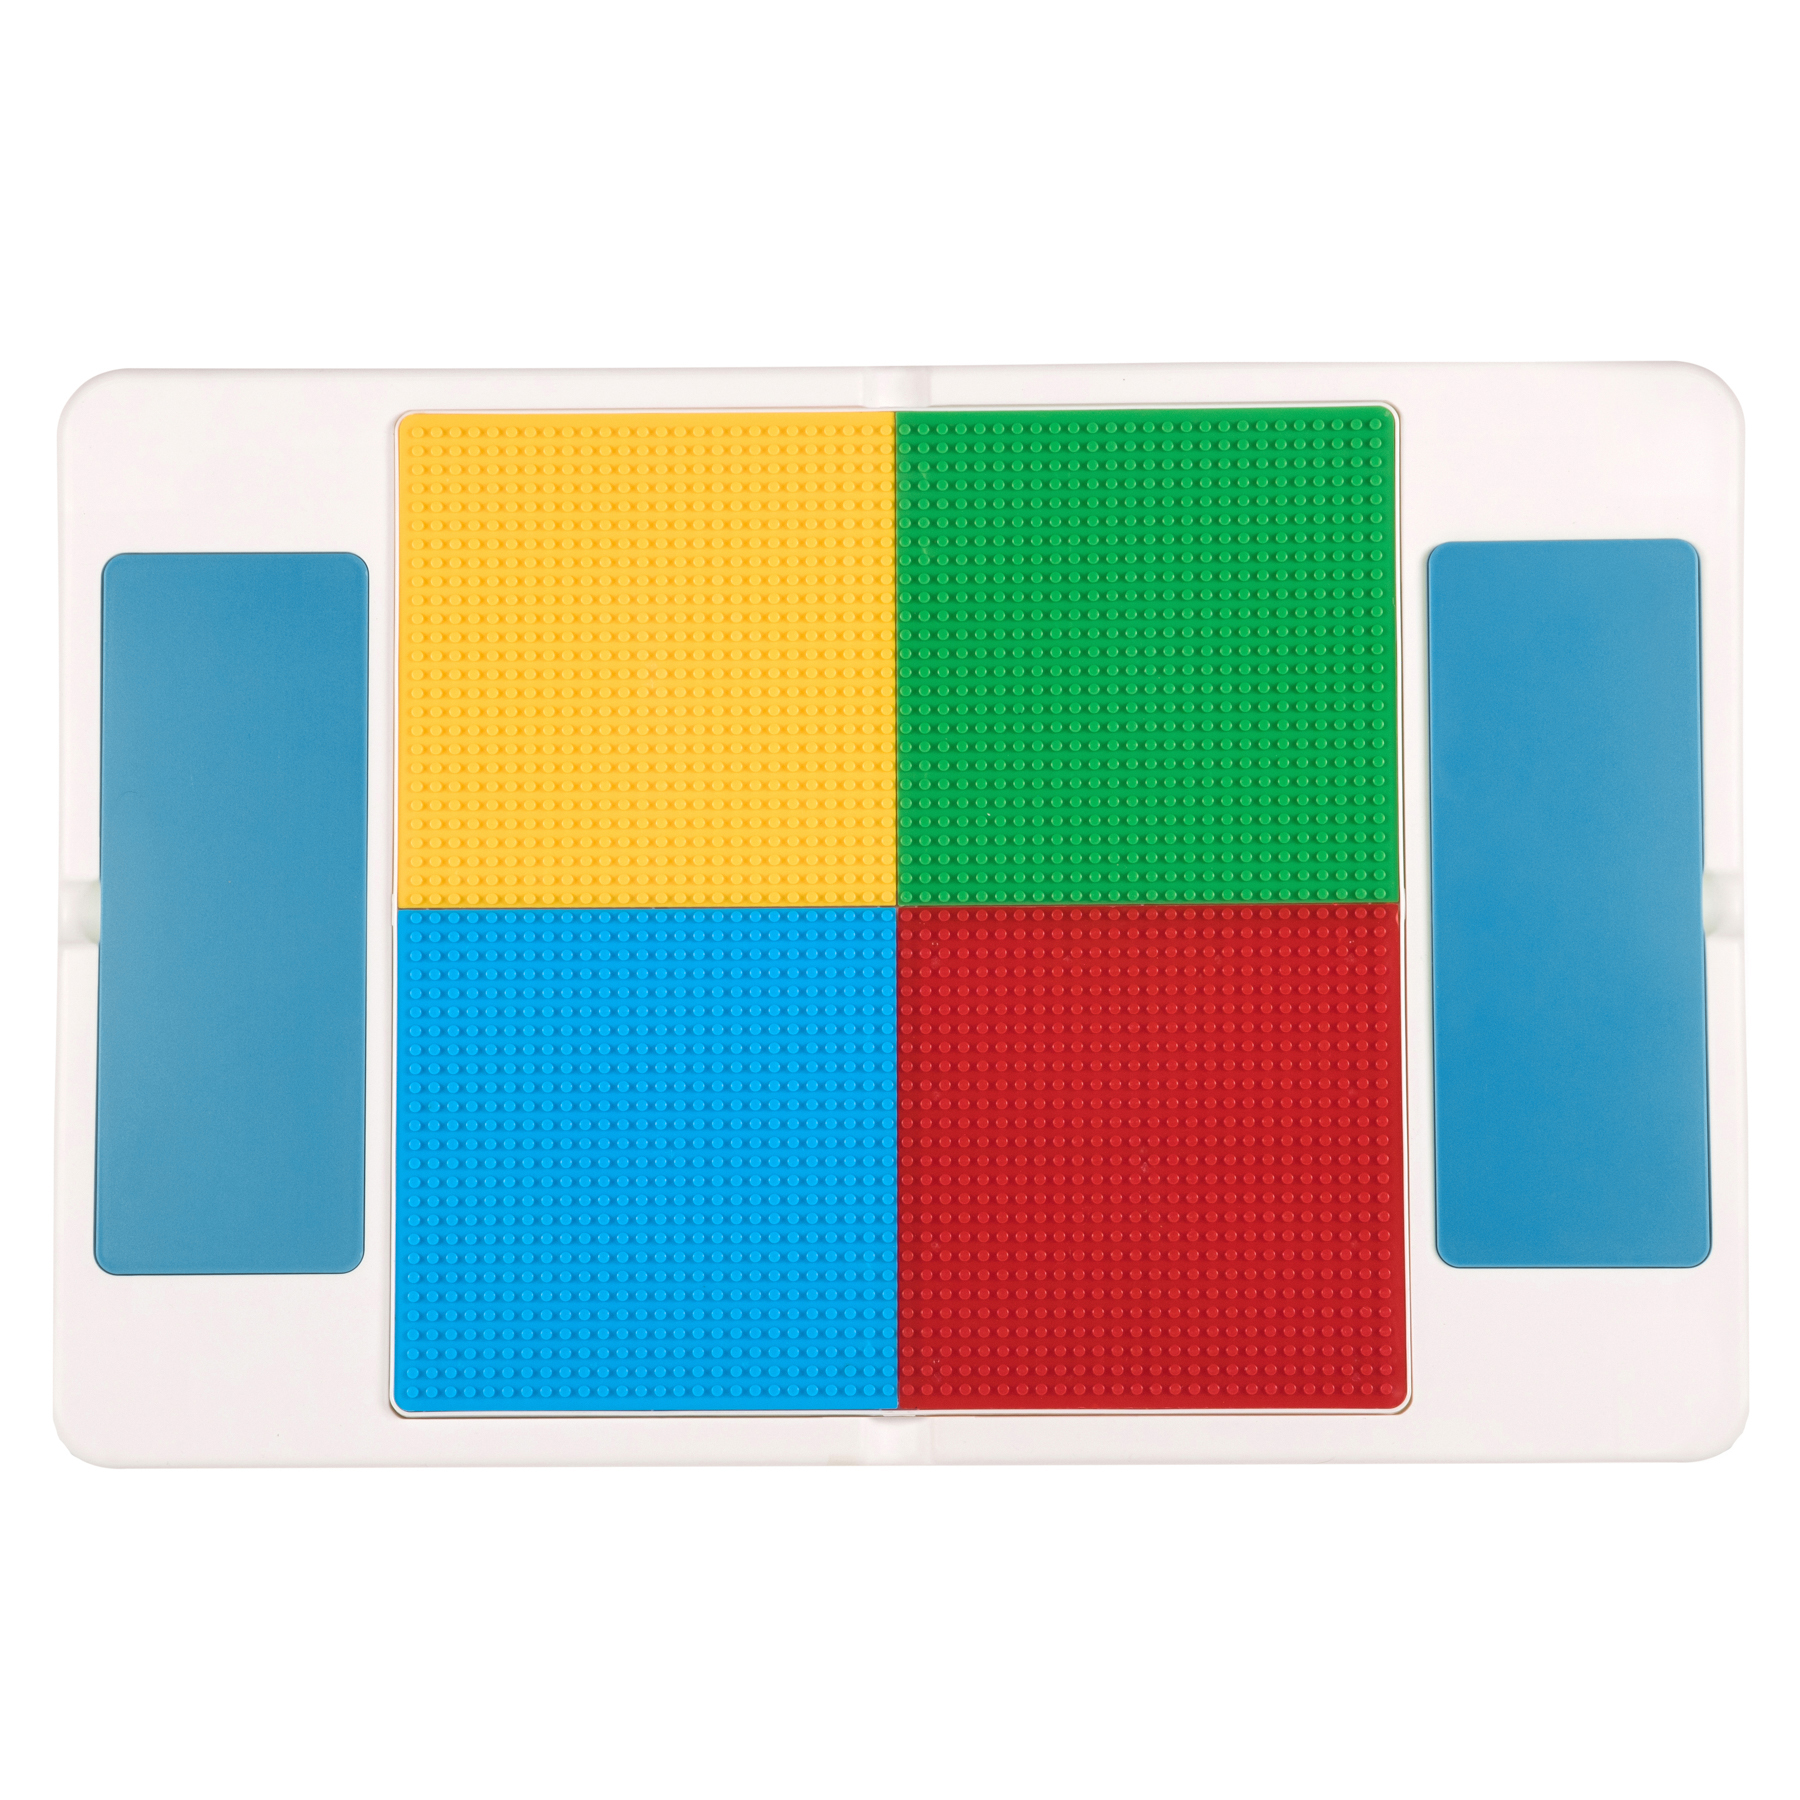  оригинальная панель для конструкторов LEGO, DUPLO и их аналогов.